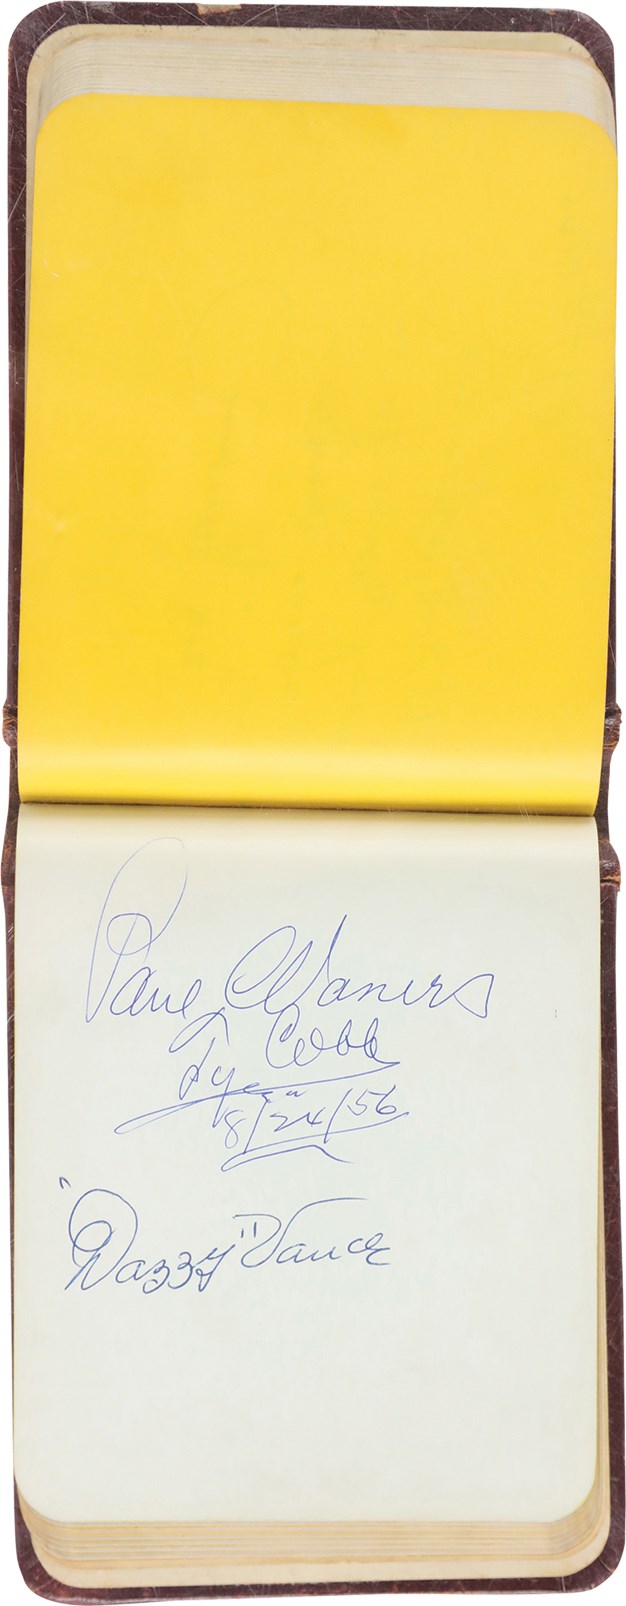 - Marconi's (Baltimore) Restaurant Autograph Album Guest Book Signed by 70 Plus JSA